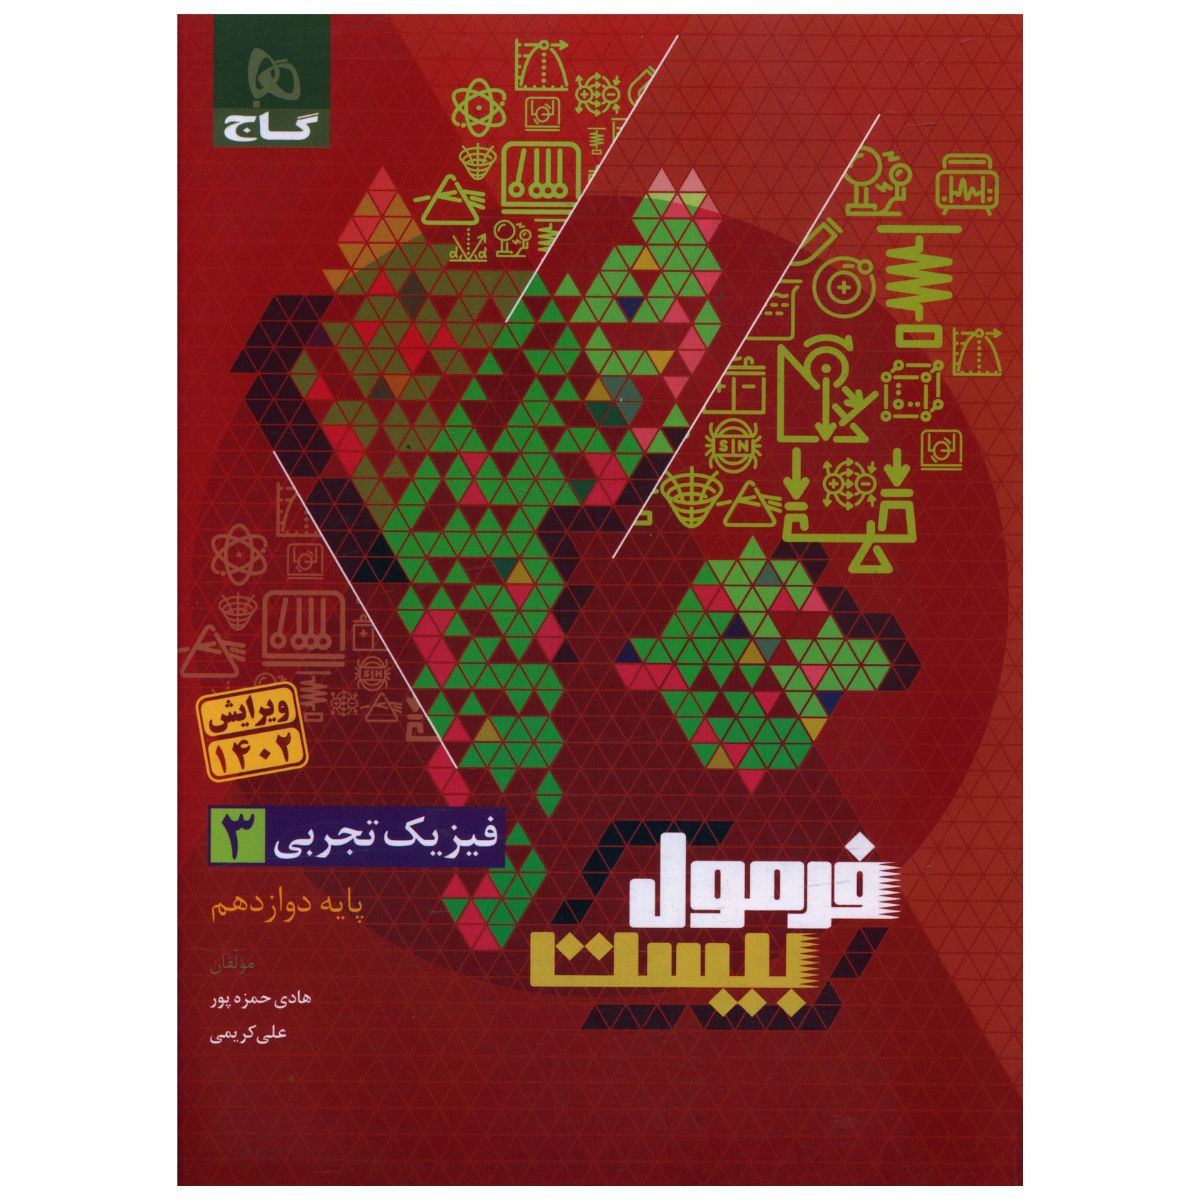 کتاب فرمول بیست فیزیک دوازدهم تجربی اثر هادی حمزه پور و علی کریمی انتشارات بین المللی گاج